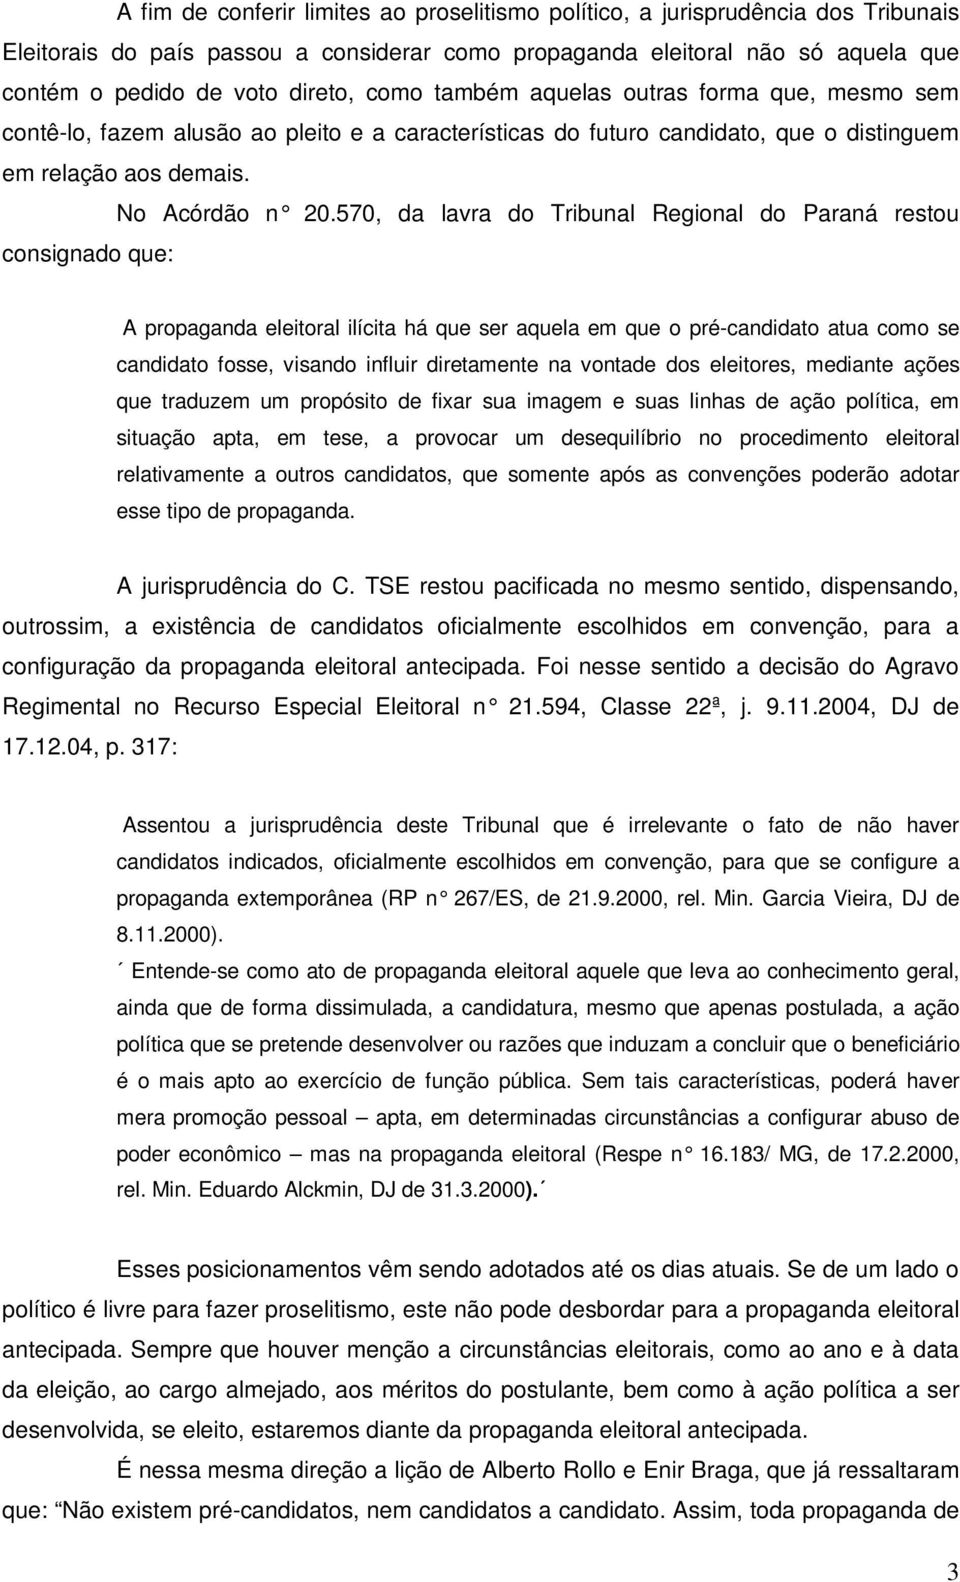 570, da lavra do Tribunal Regional do Paraná restou consignado que: A propaganda eleitoral ilícita há que ser aquela em que o pré-candidato atua como se candidato fosse, visando influir diretamente